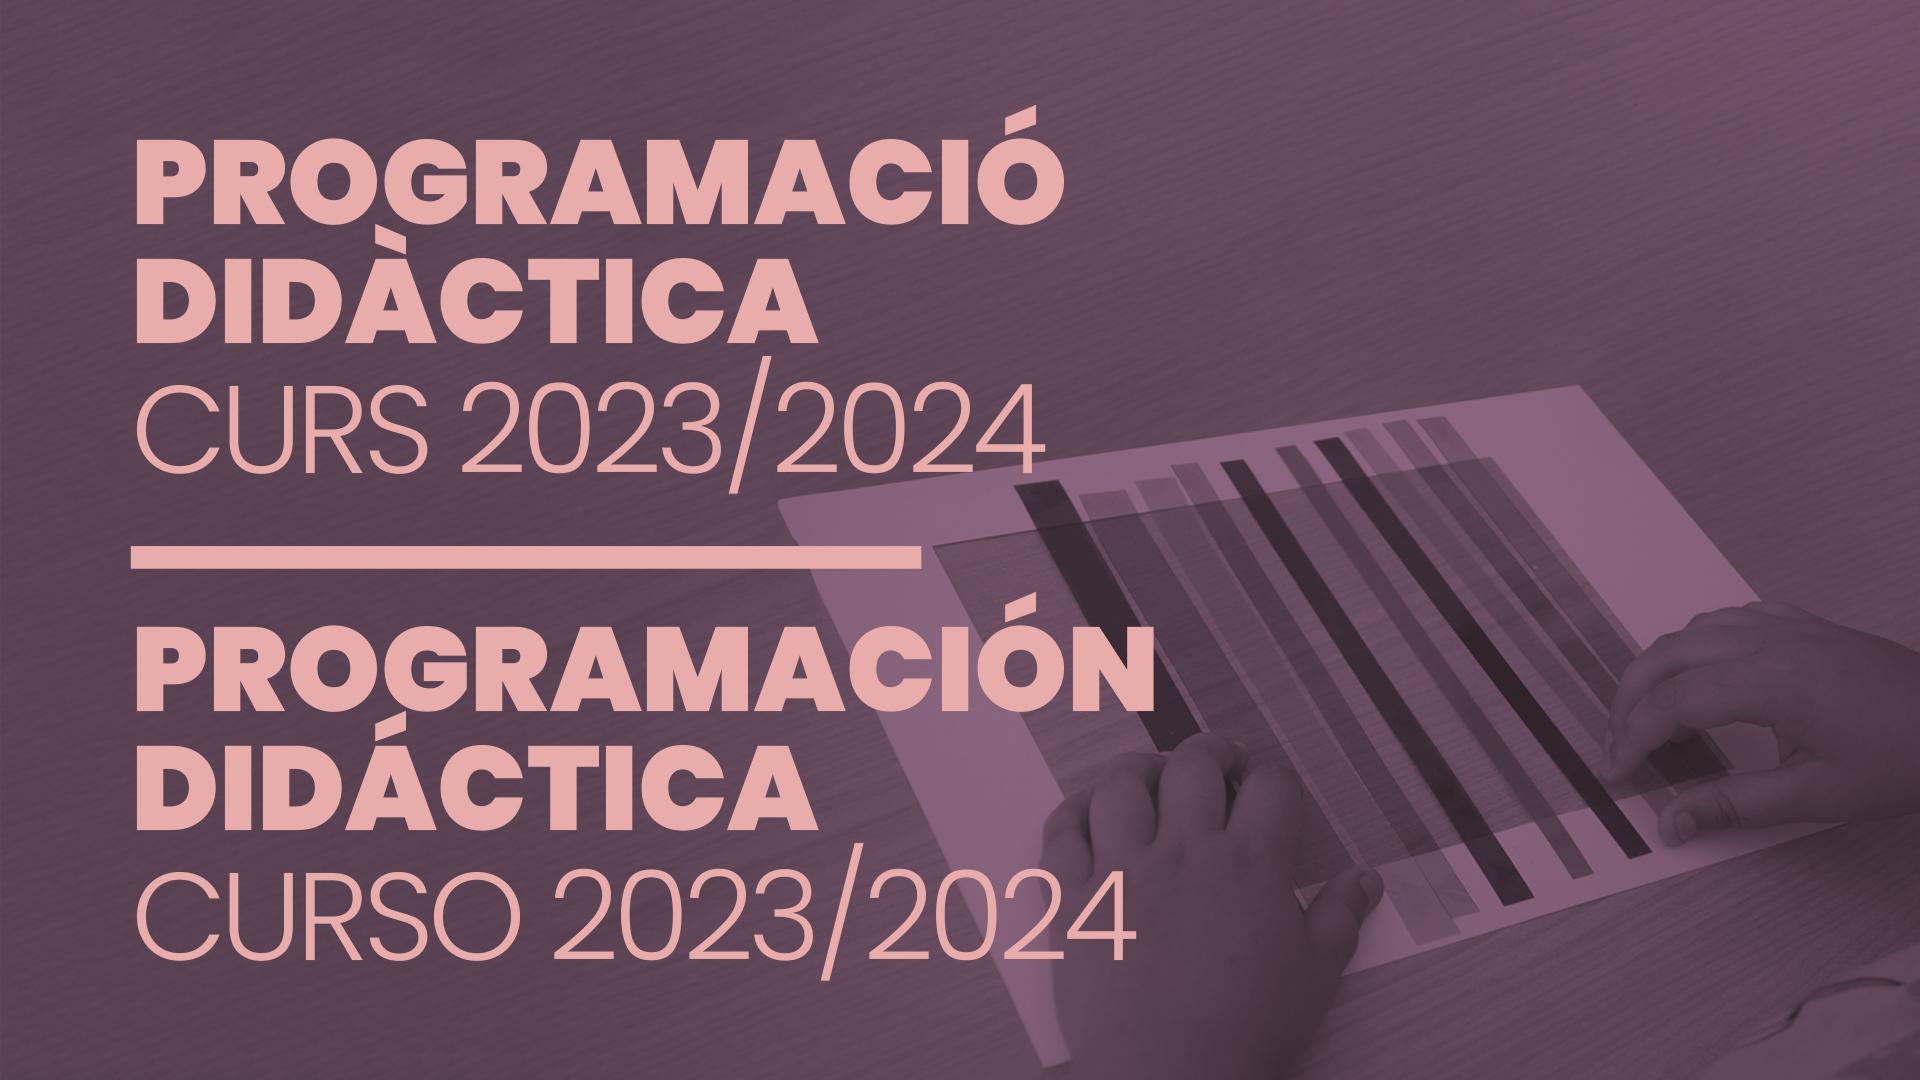 PROGRAMACIÓ DIDÀCTICA CURS 2023/2024